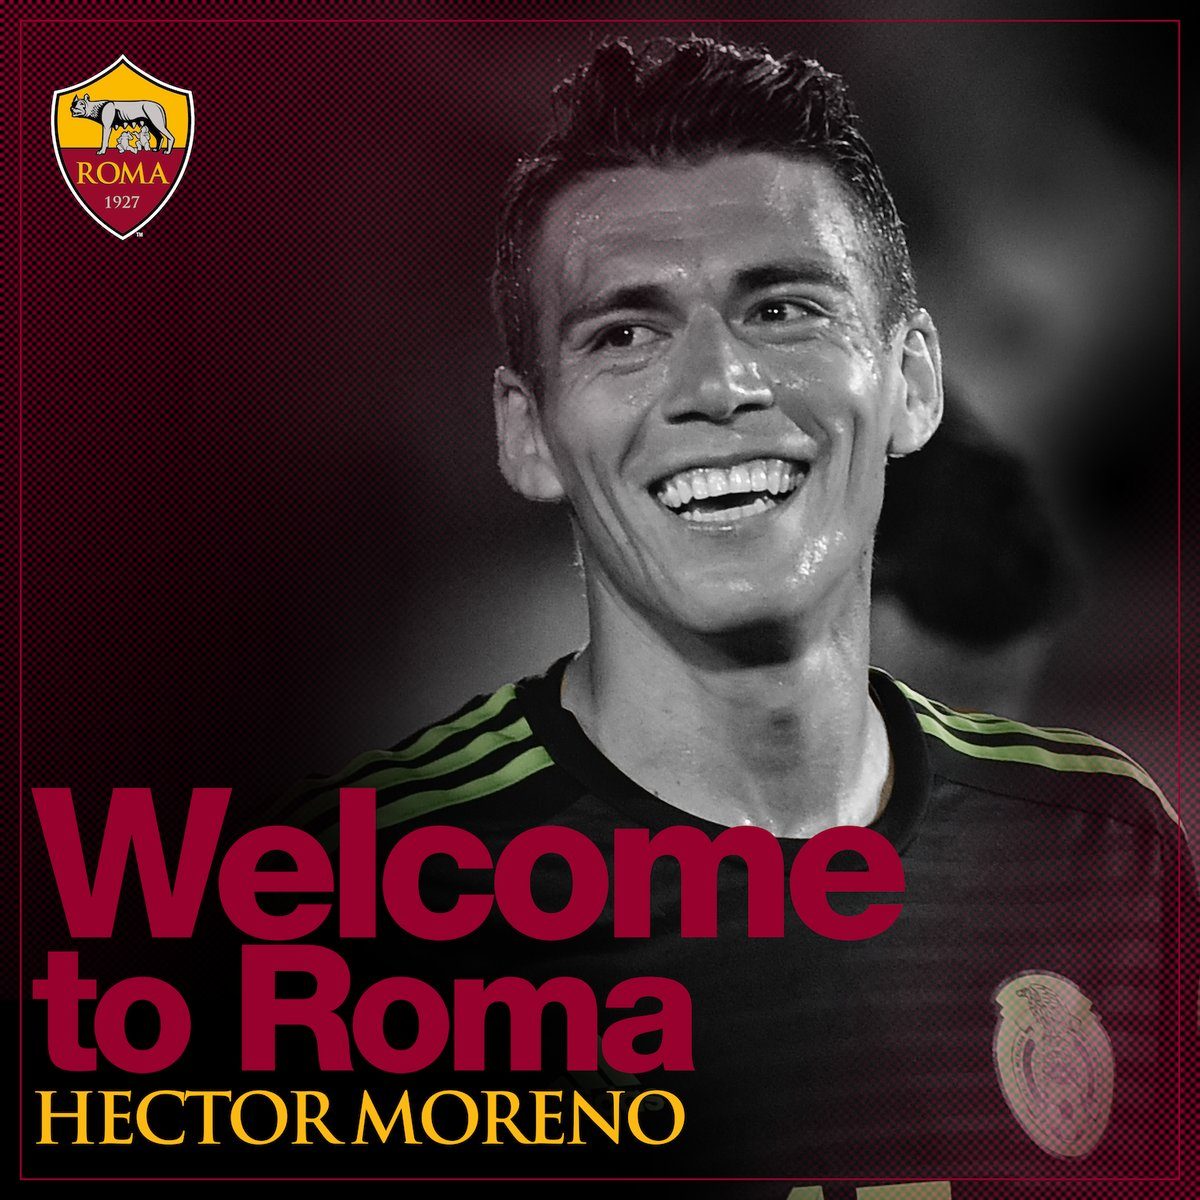 Hector Moreno resmi bergabung dengan AS Roma. Foto dari Twitter/@ASRomaEN 